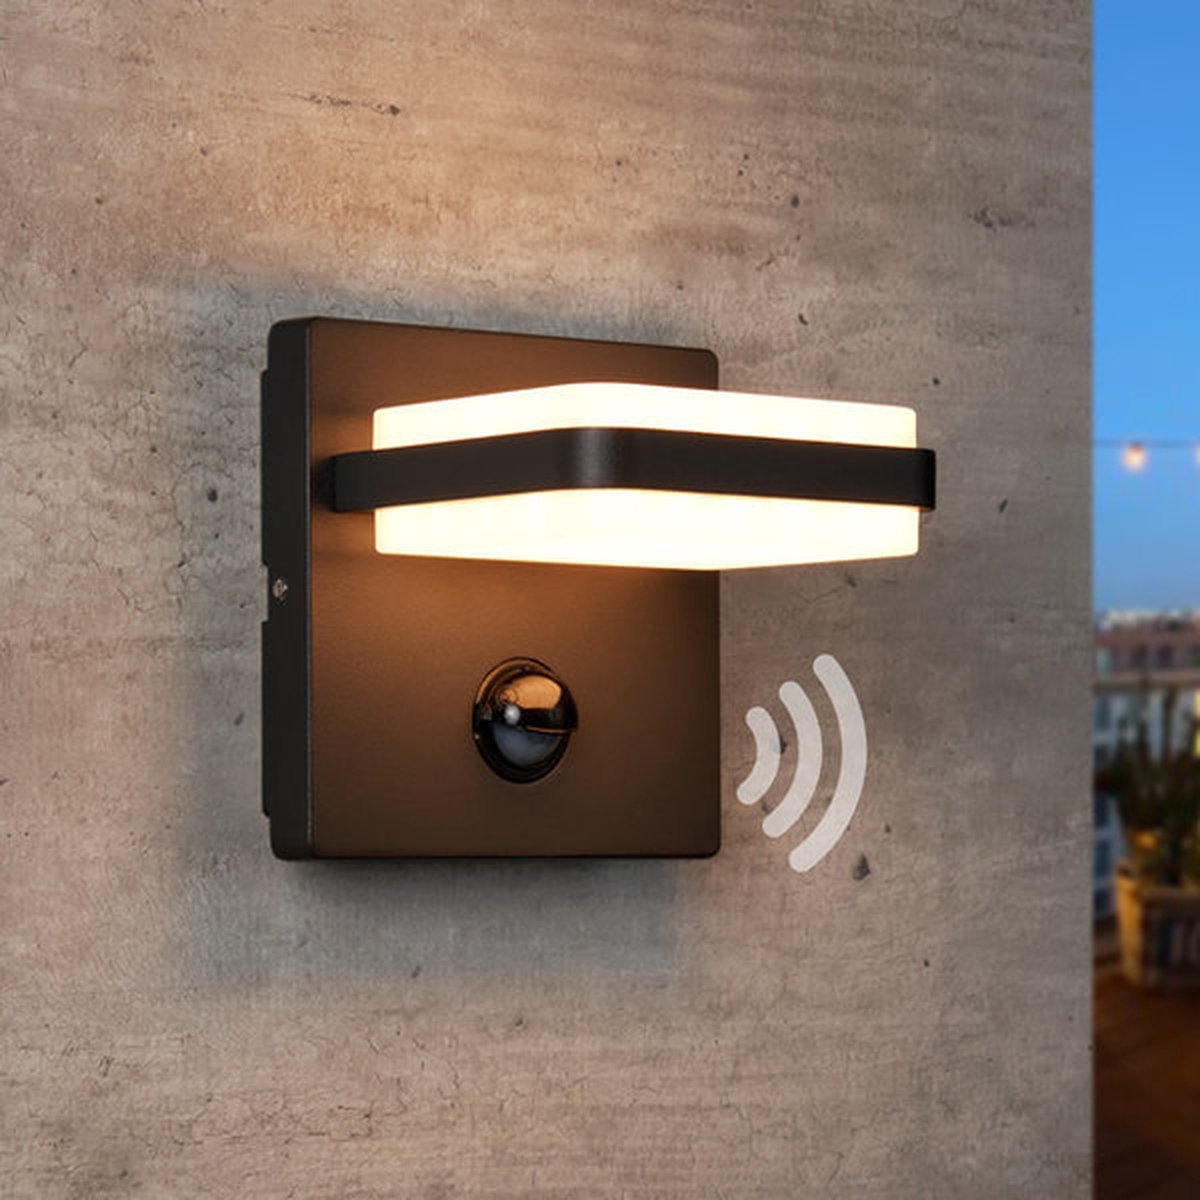 Wandlamp met sensor Stefano - antraciet Ideale tuinlampen voor aan de muur, wand of schutting